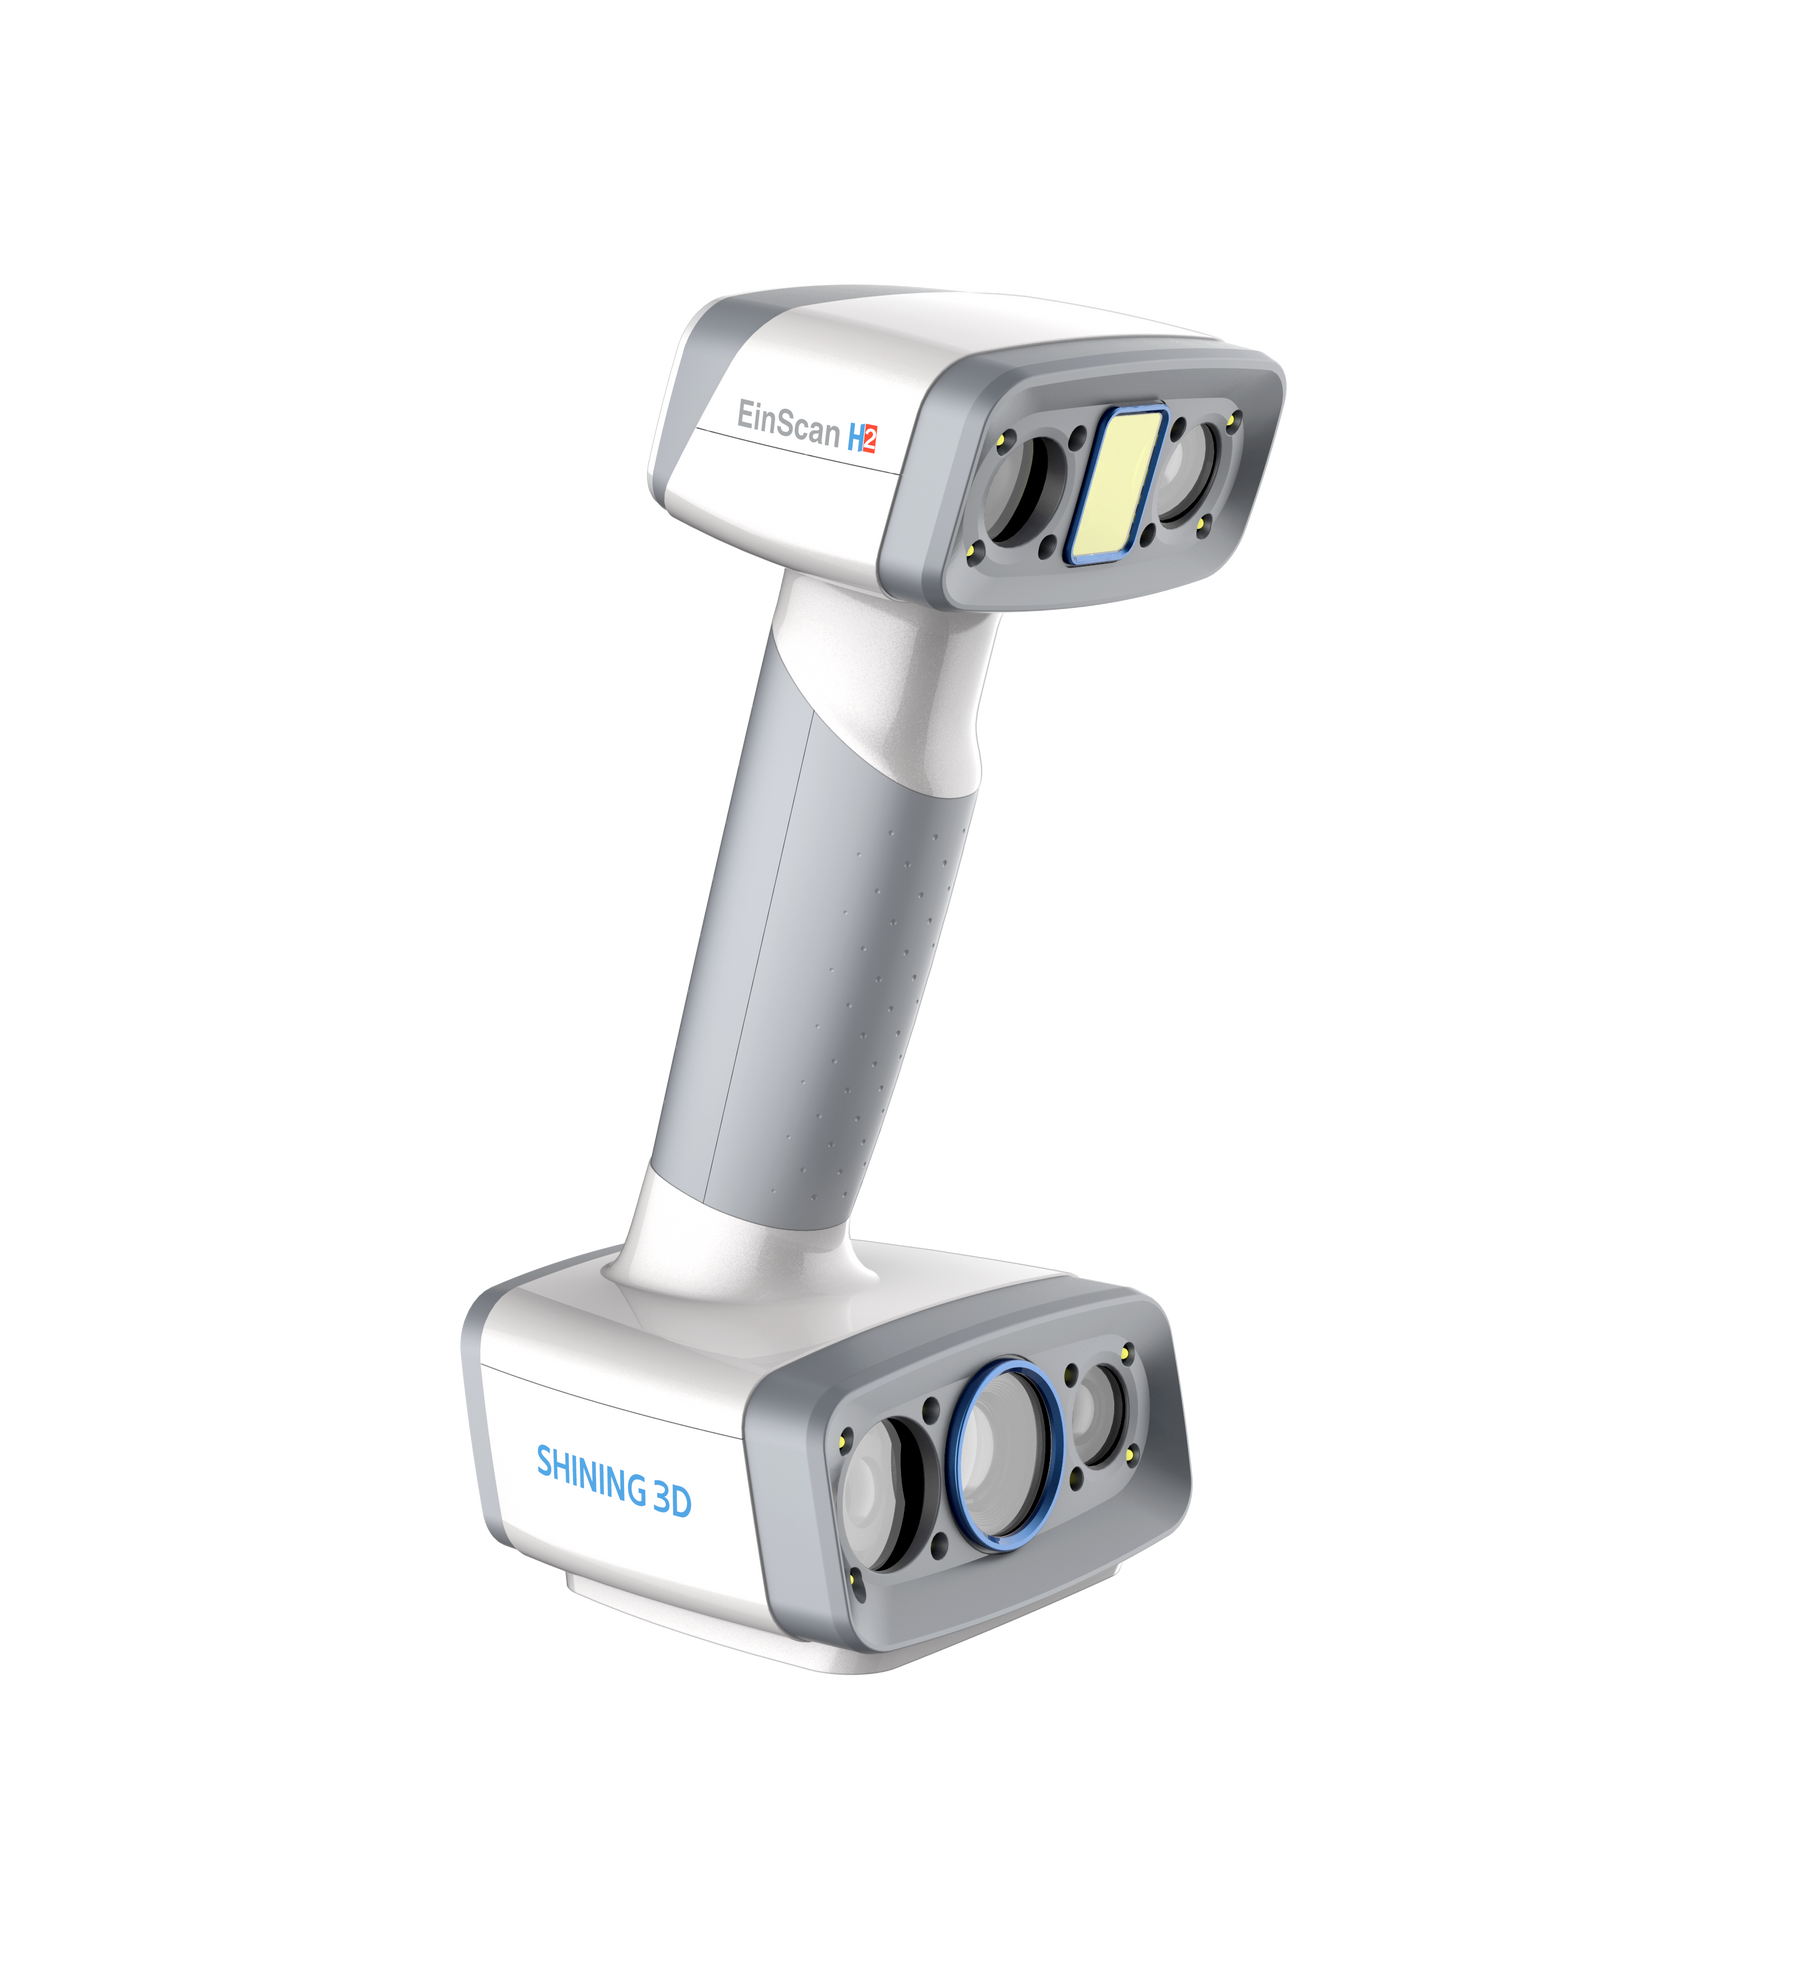 Einscan H2 Hybrid LED & Infrared Color Handheld 3D Scanner